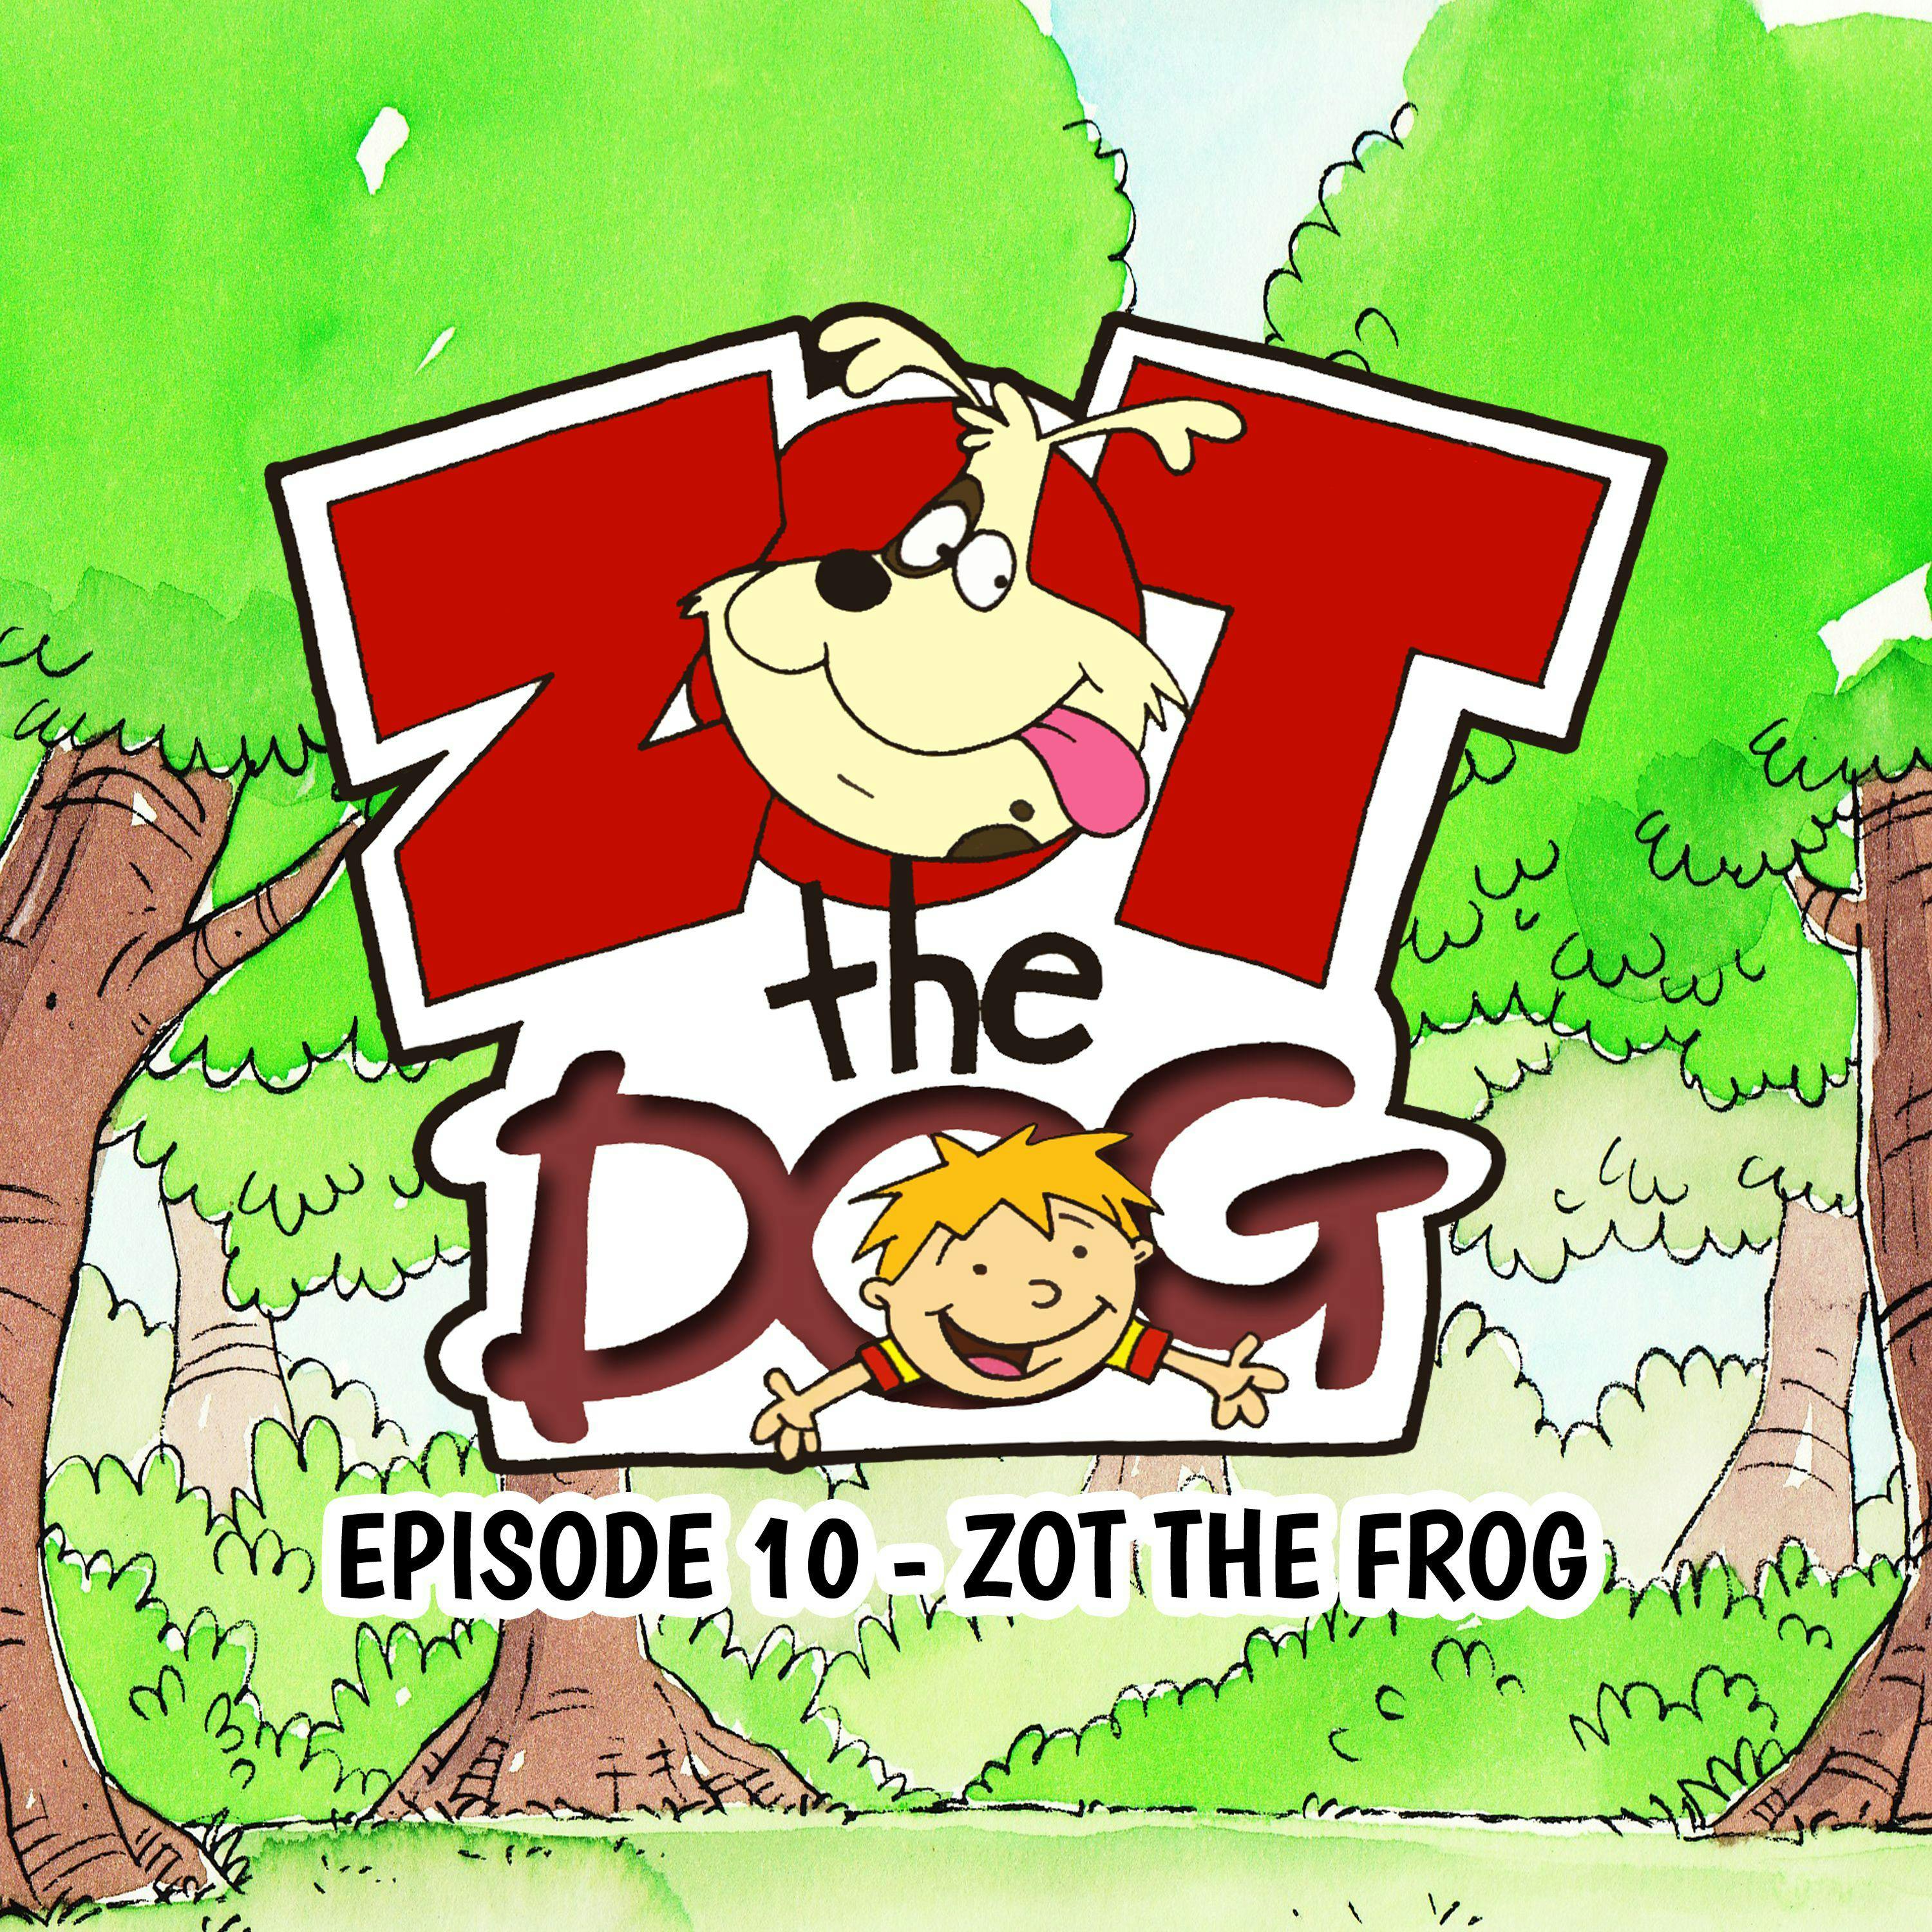 Zot the Dog: Episode 10 - Zot the Frog - Ivan Jones